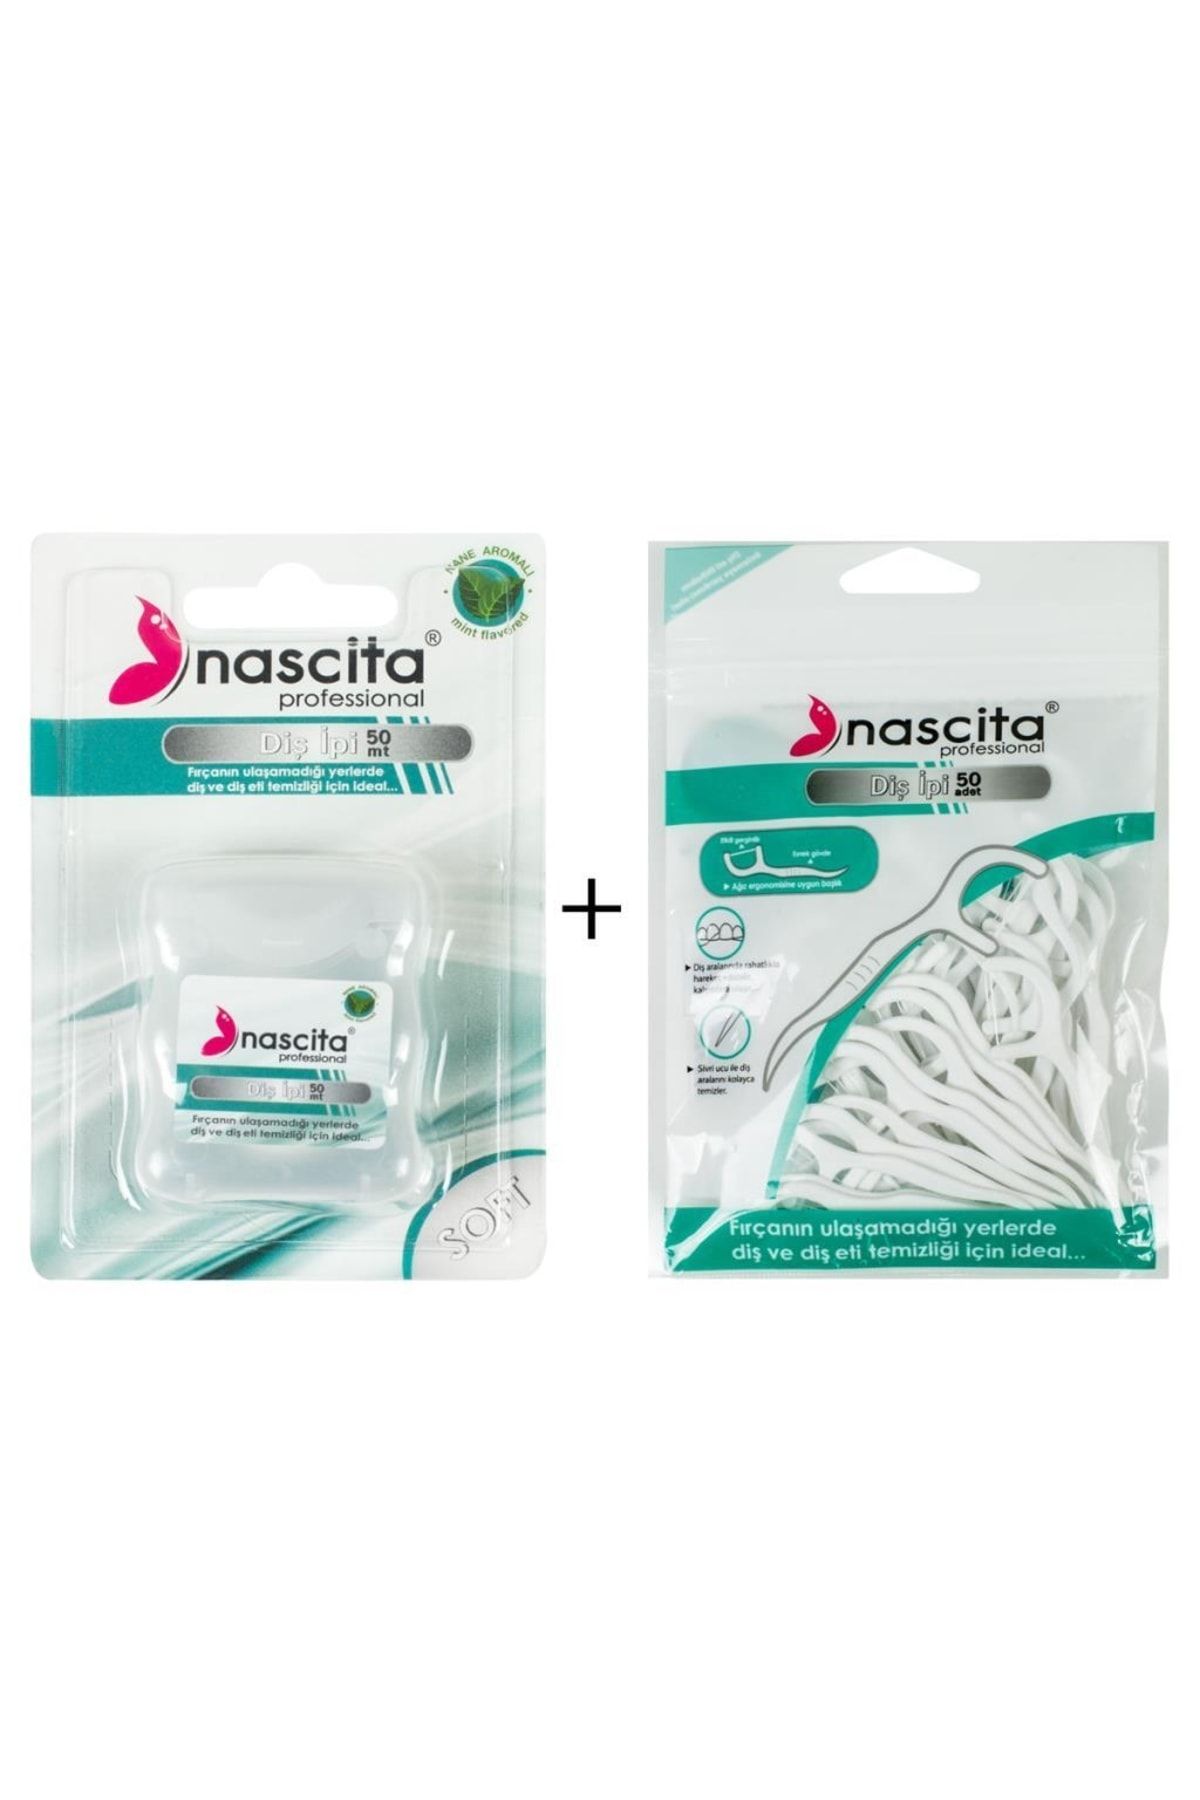 Nascita 50lik Nane Aromalı Kürdanlı Diş Ipi + Nasc